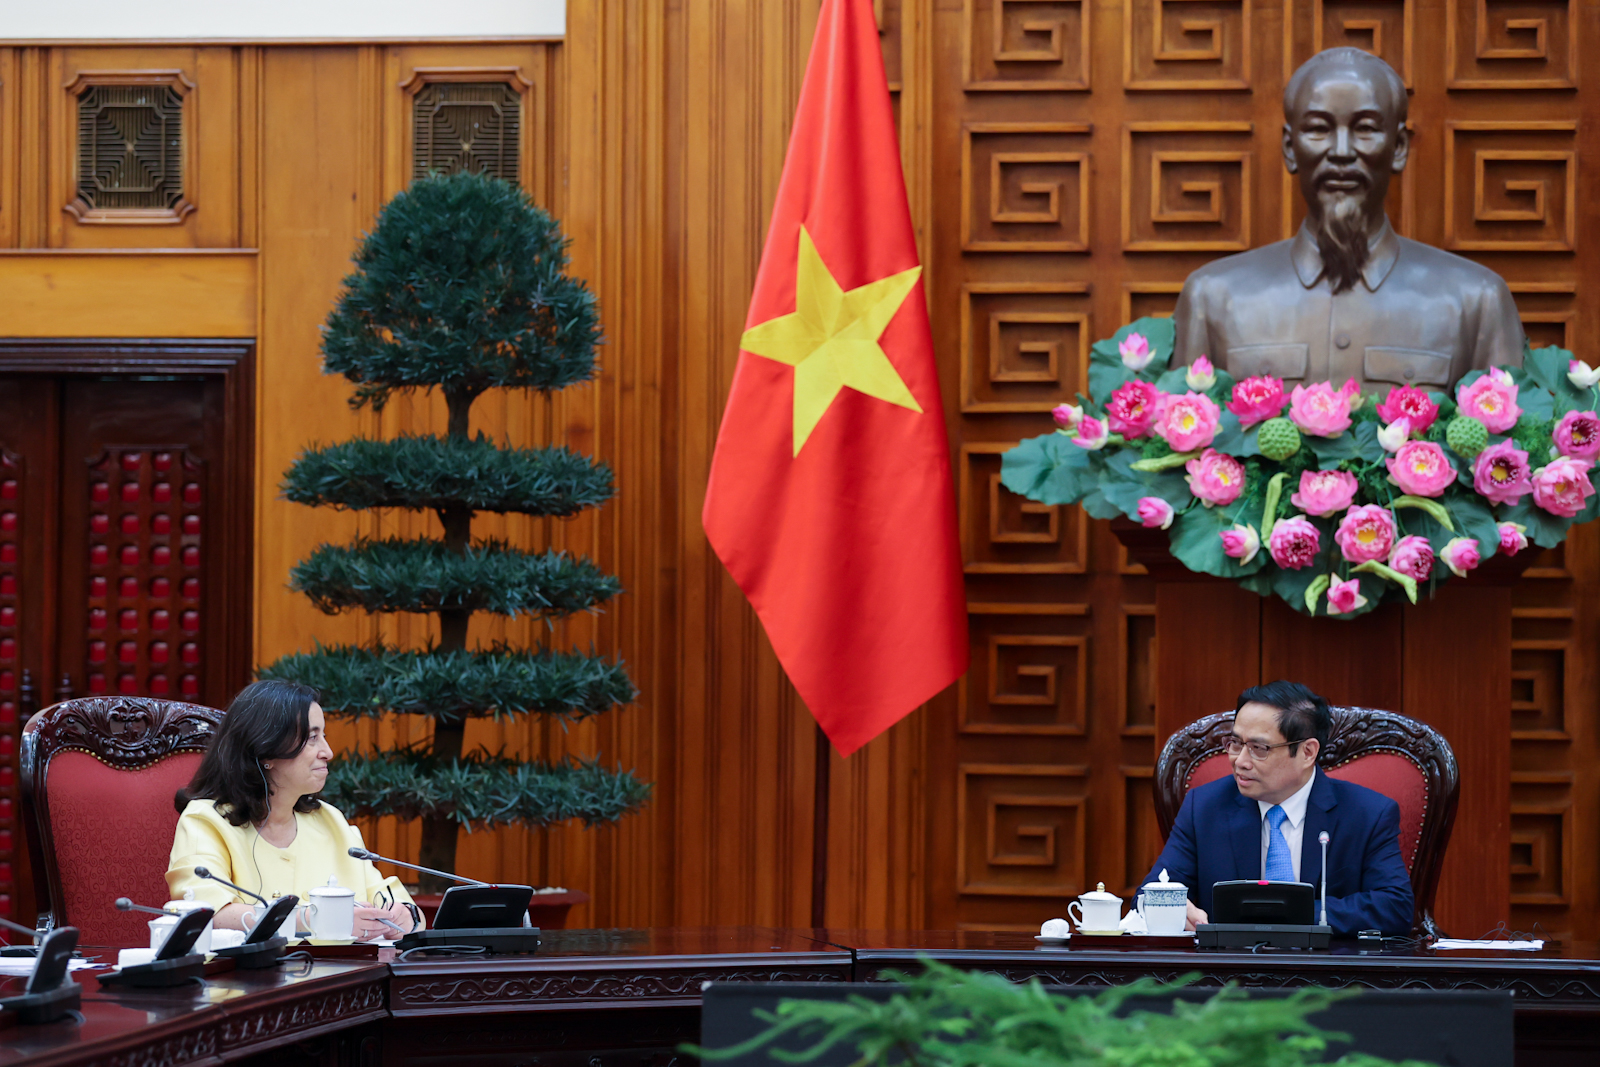 WB tiếp tục hỗ trợ Việt Nam giai đoạn hậu COVID-19, xây dựng nền kinh tế độc lập, tự chủ - Ảnh 2.